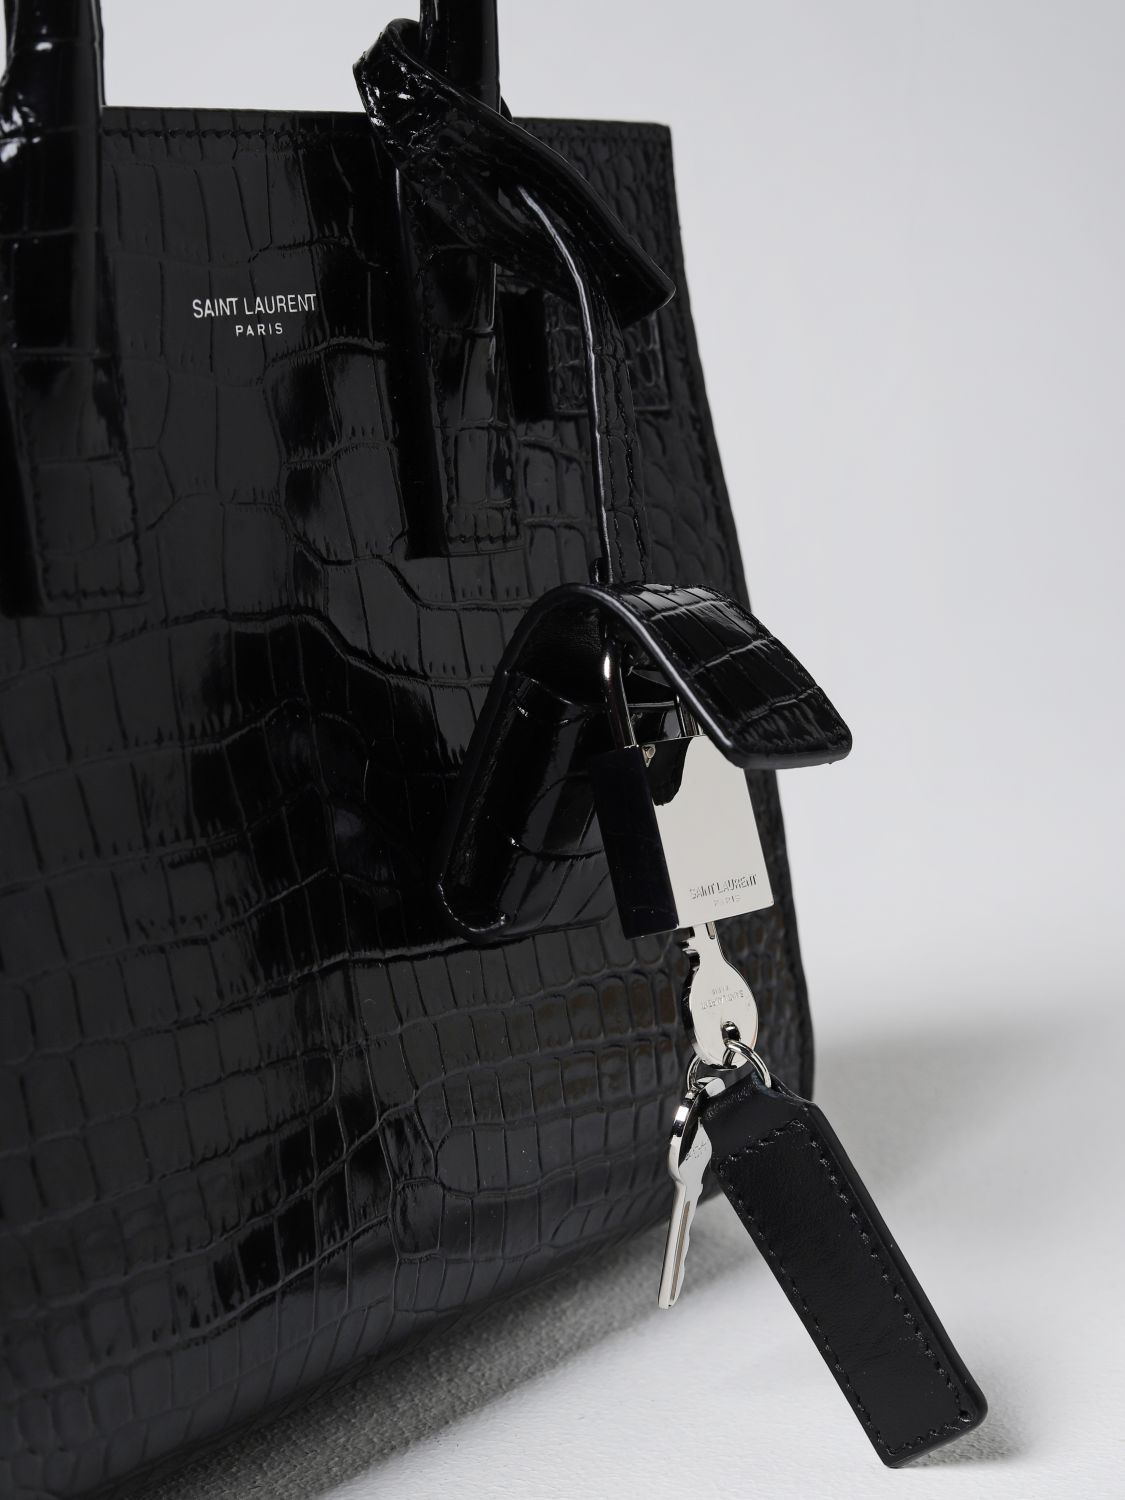 SAINT LAURENT: Sac De Jour boarded leather bag - Black  Saint Laurent  handbag 39203502G9W online at